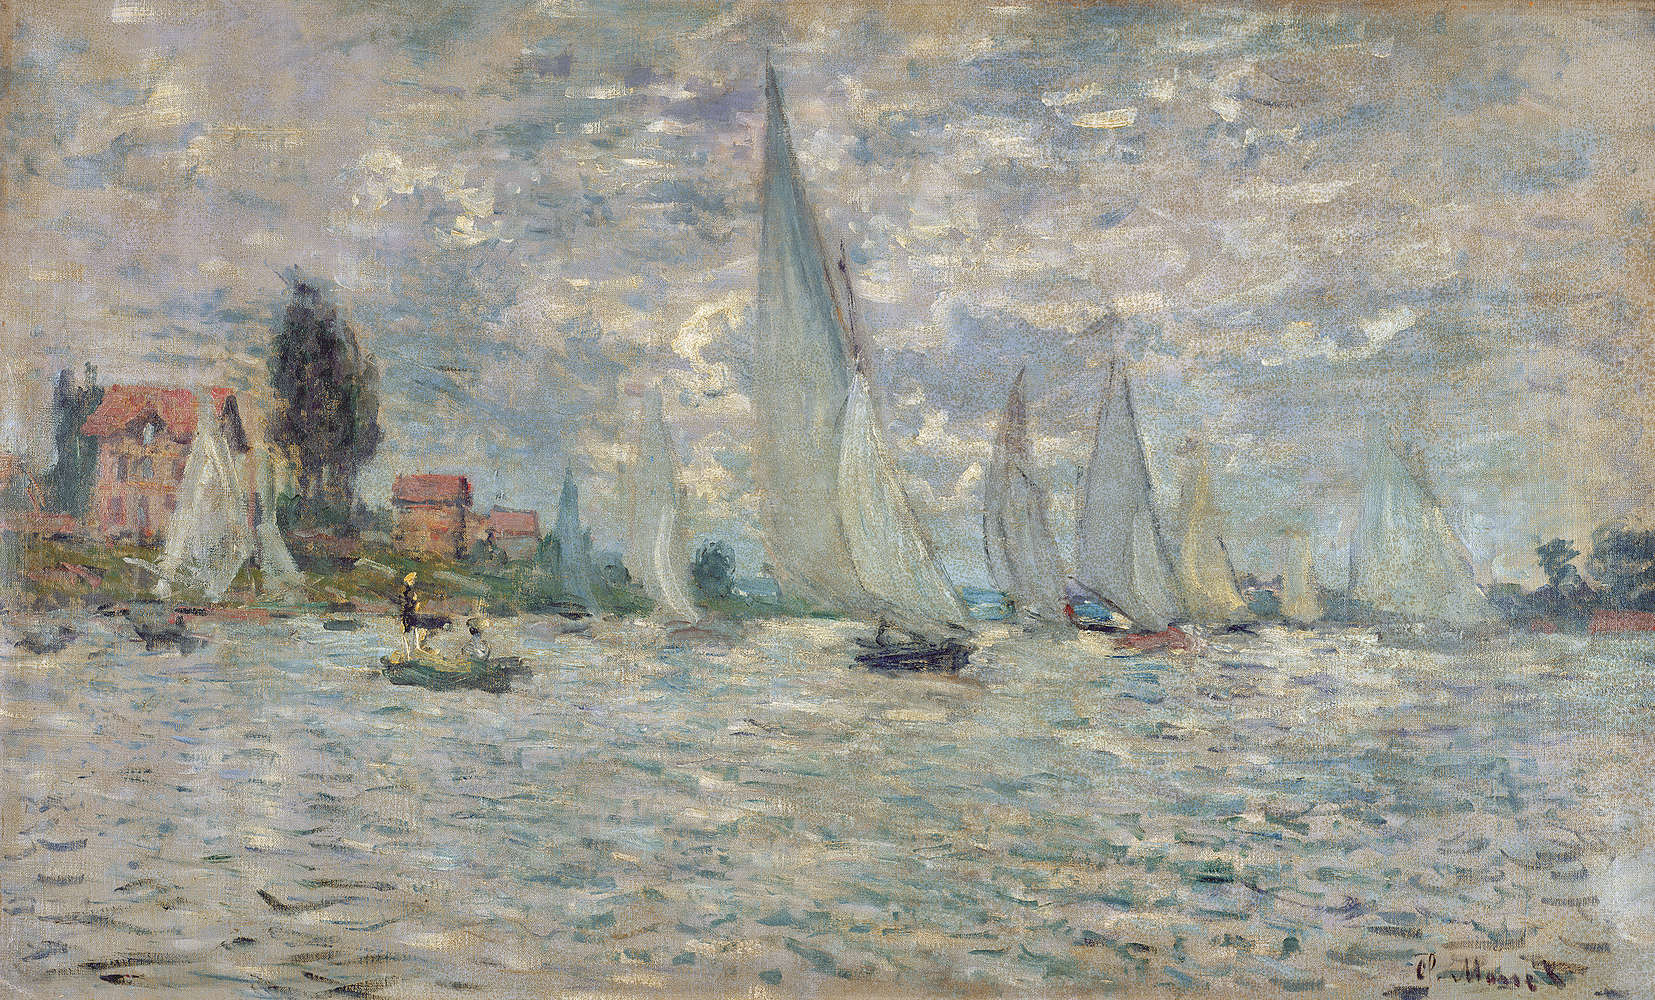             De boten of de regatta van Argenteuil" muurschildering van Claude Monet
        